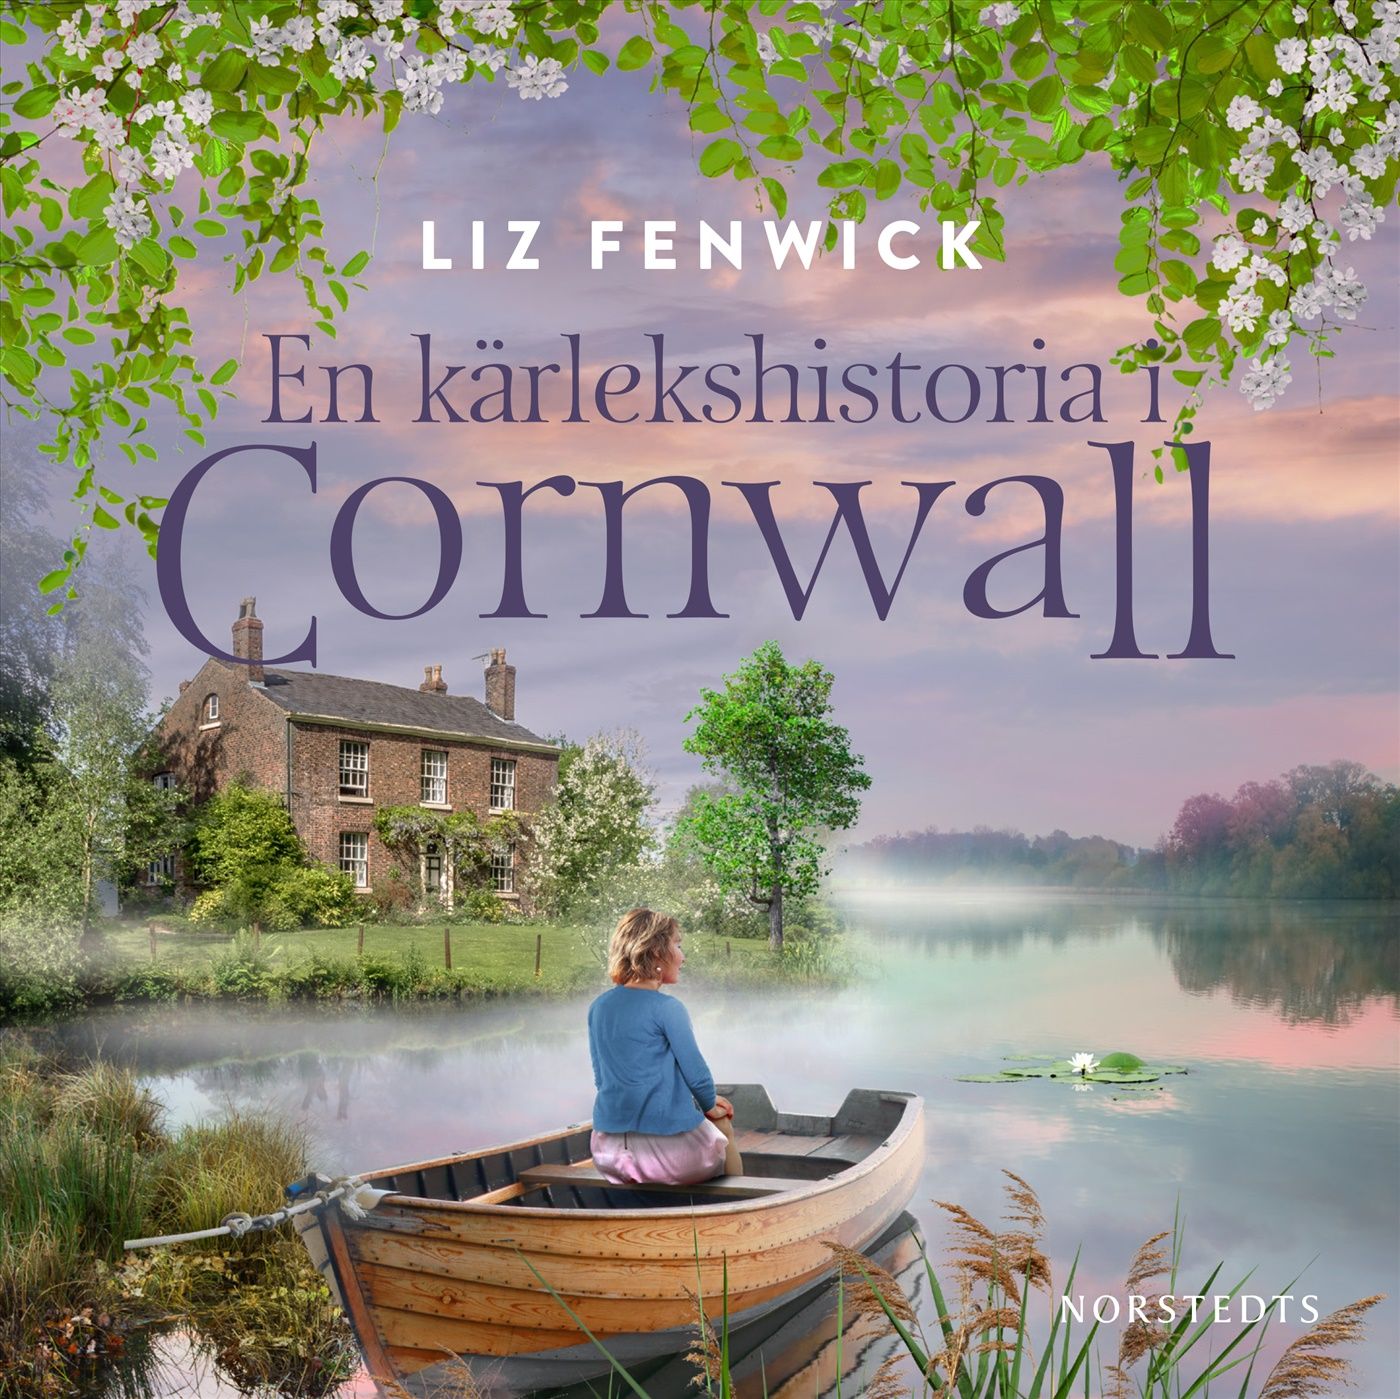 En kärlekshistoria i Cornwall, ljudbok av Liz Fenwick